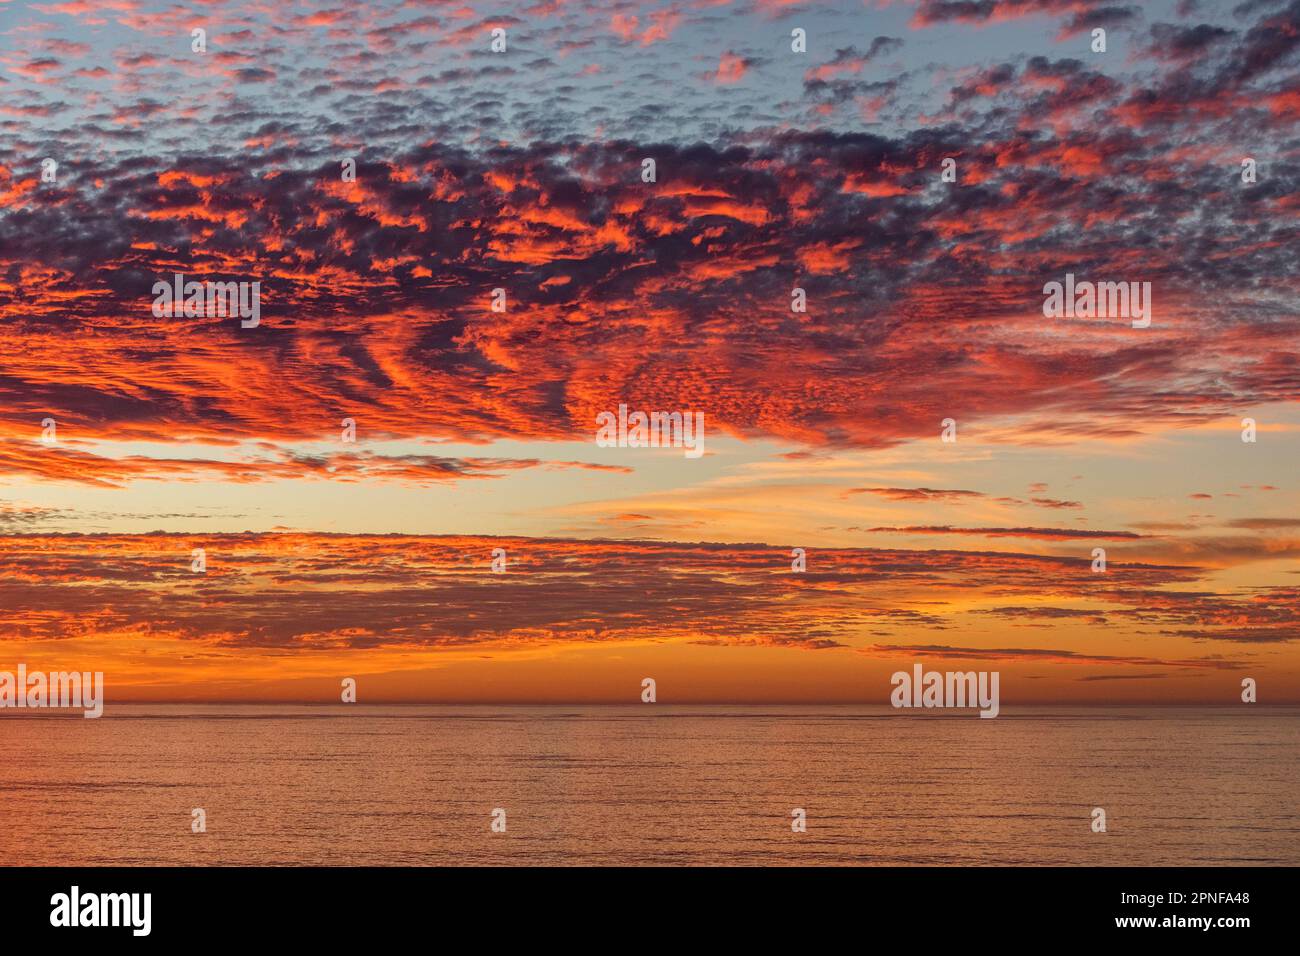 Paysage marin de Big sur au coucher du soleil Banque D'Images